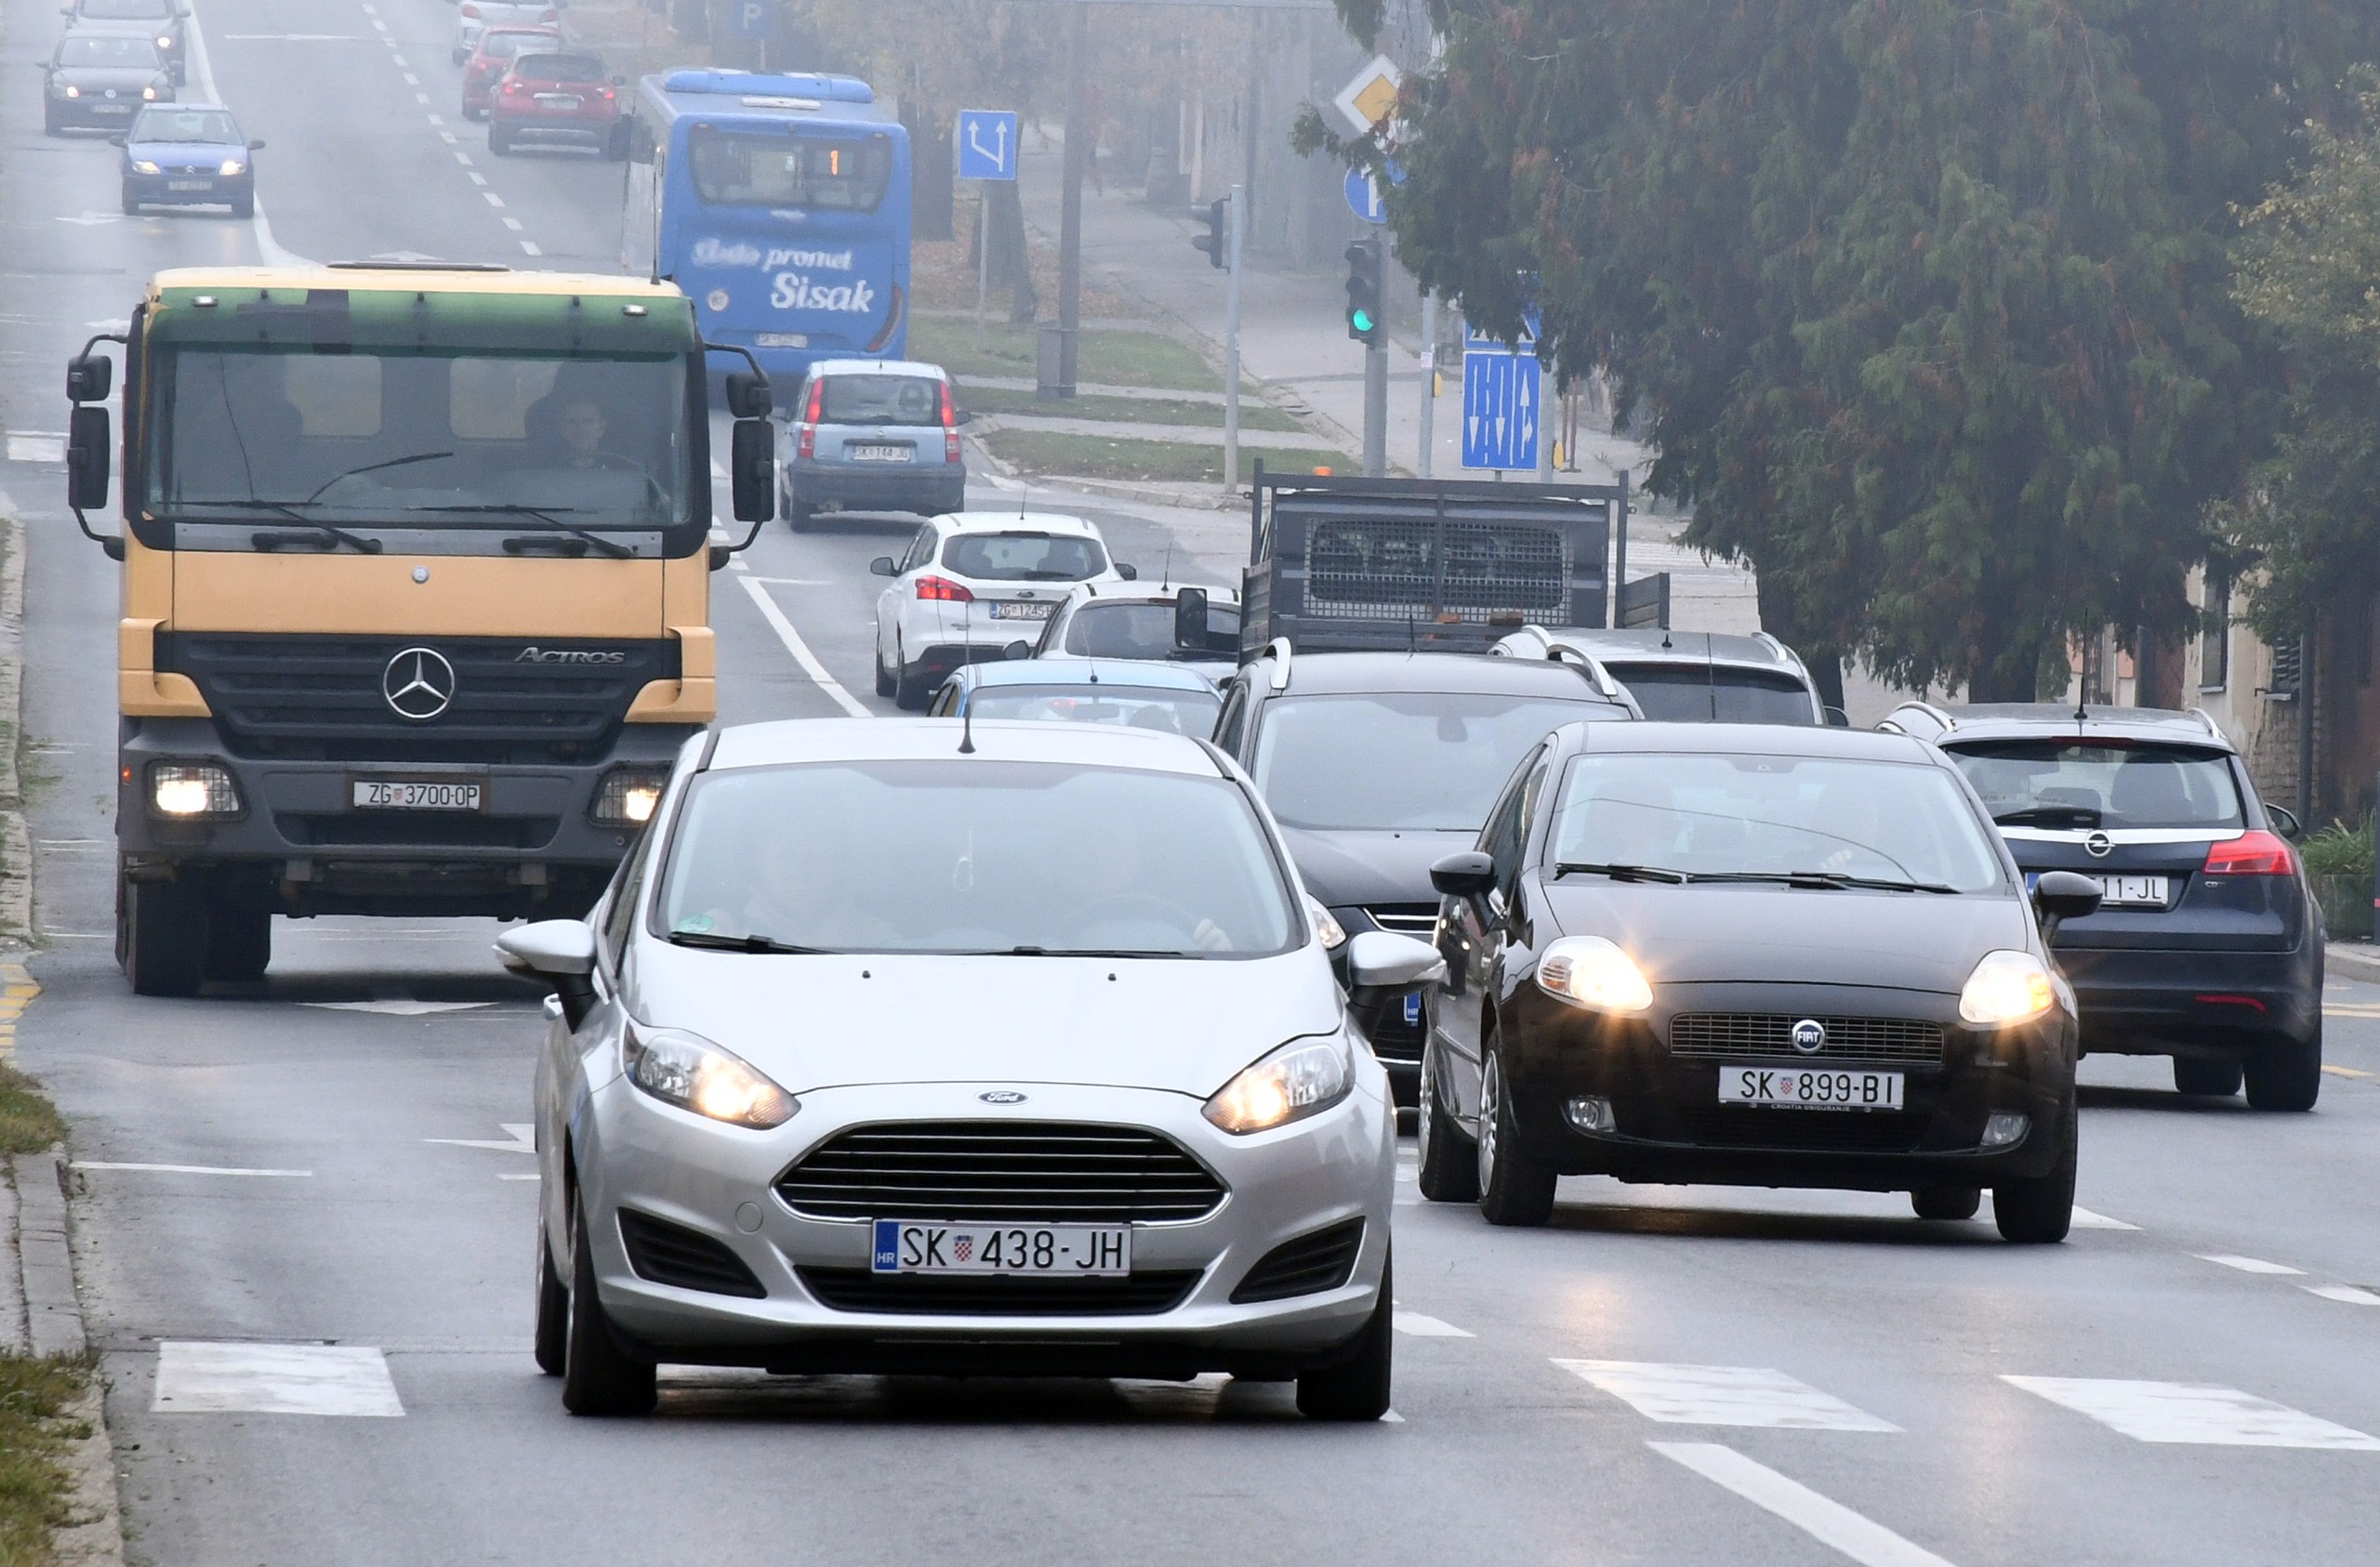 28.10.2021., Sisak - Dnevna ili kratka svjetla na motornim vozilima obvezna su danju u razdoblju od 1. studenog do 31. ozujka. Photo: Nikola Cutuk/PIXSELL